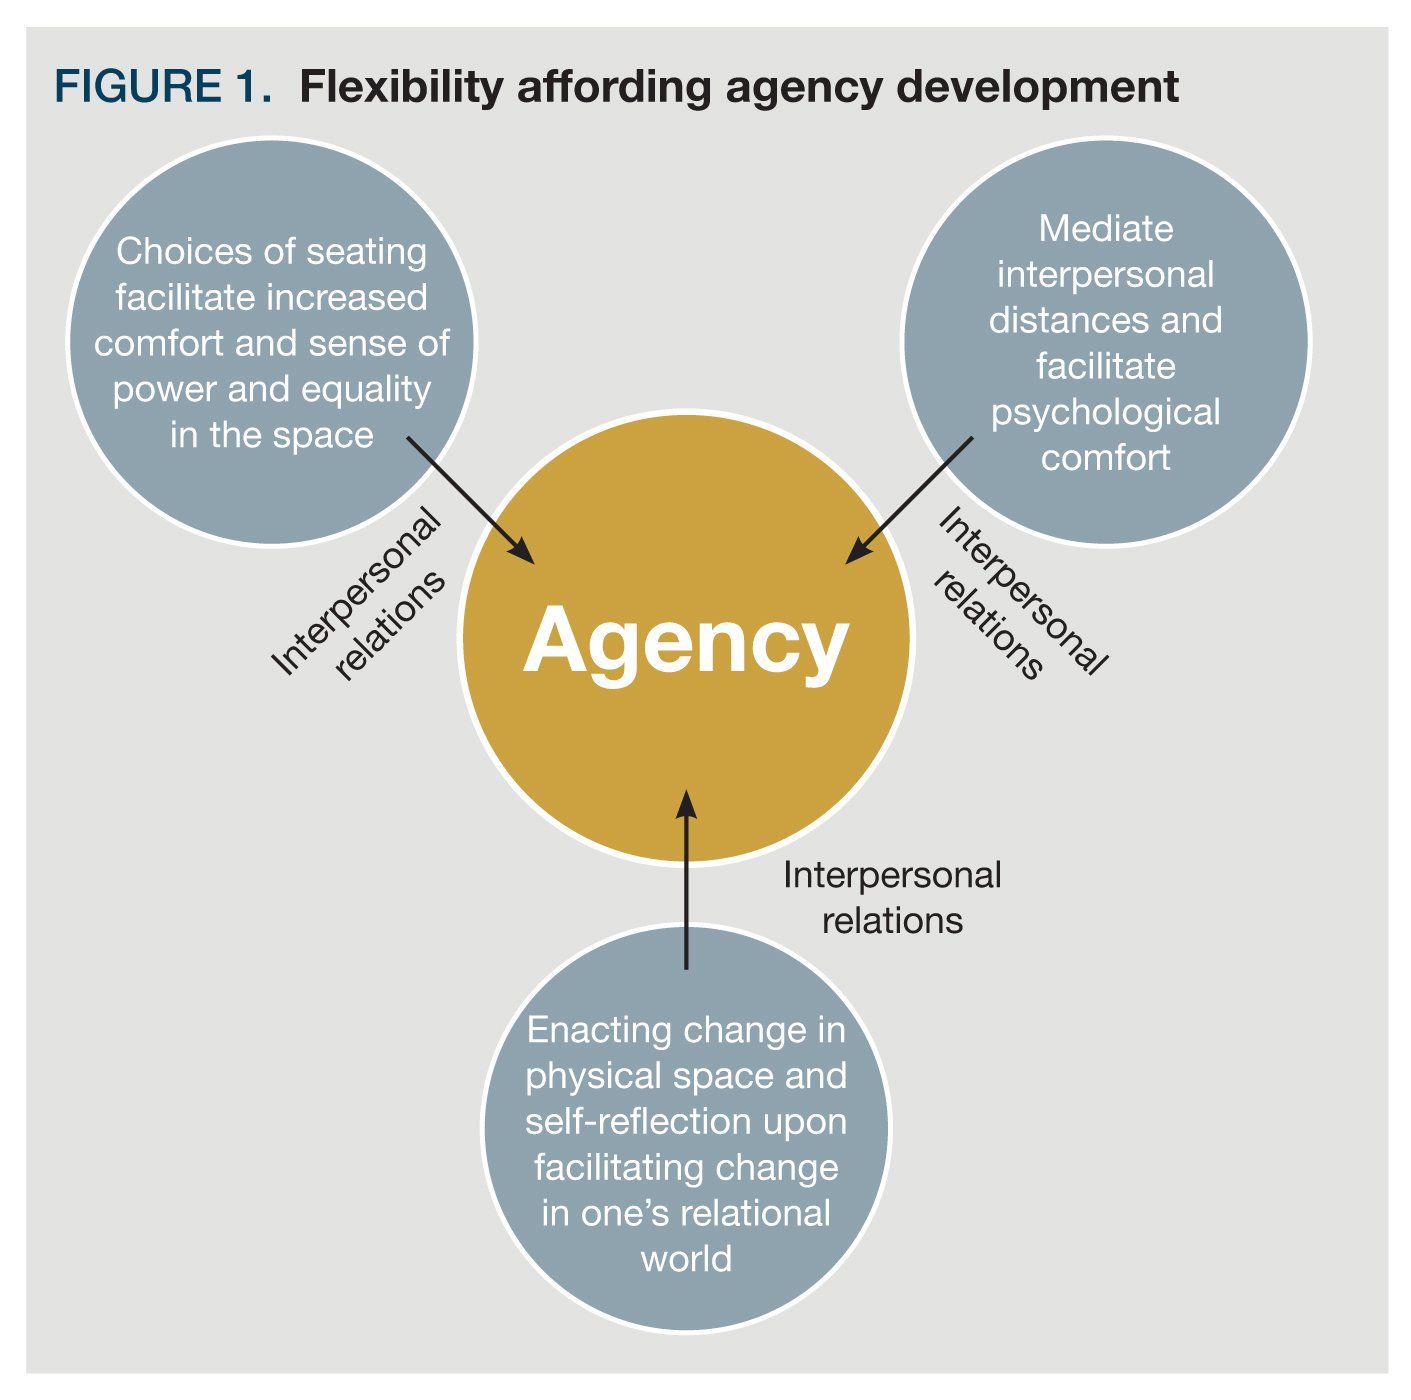 Flexibility affording agency development